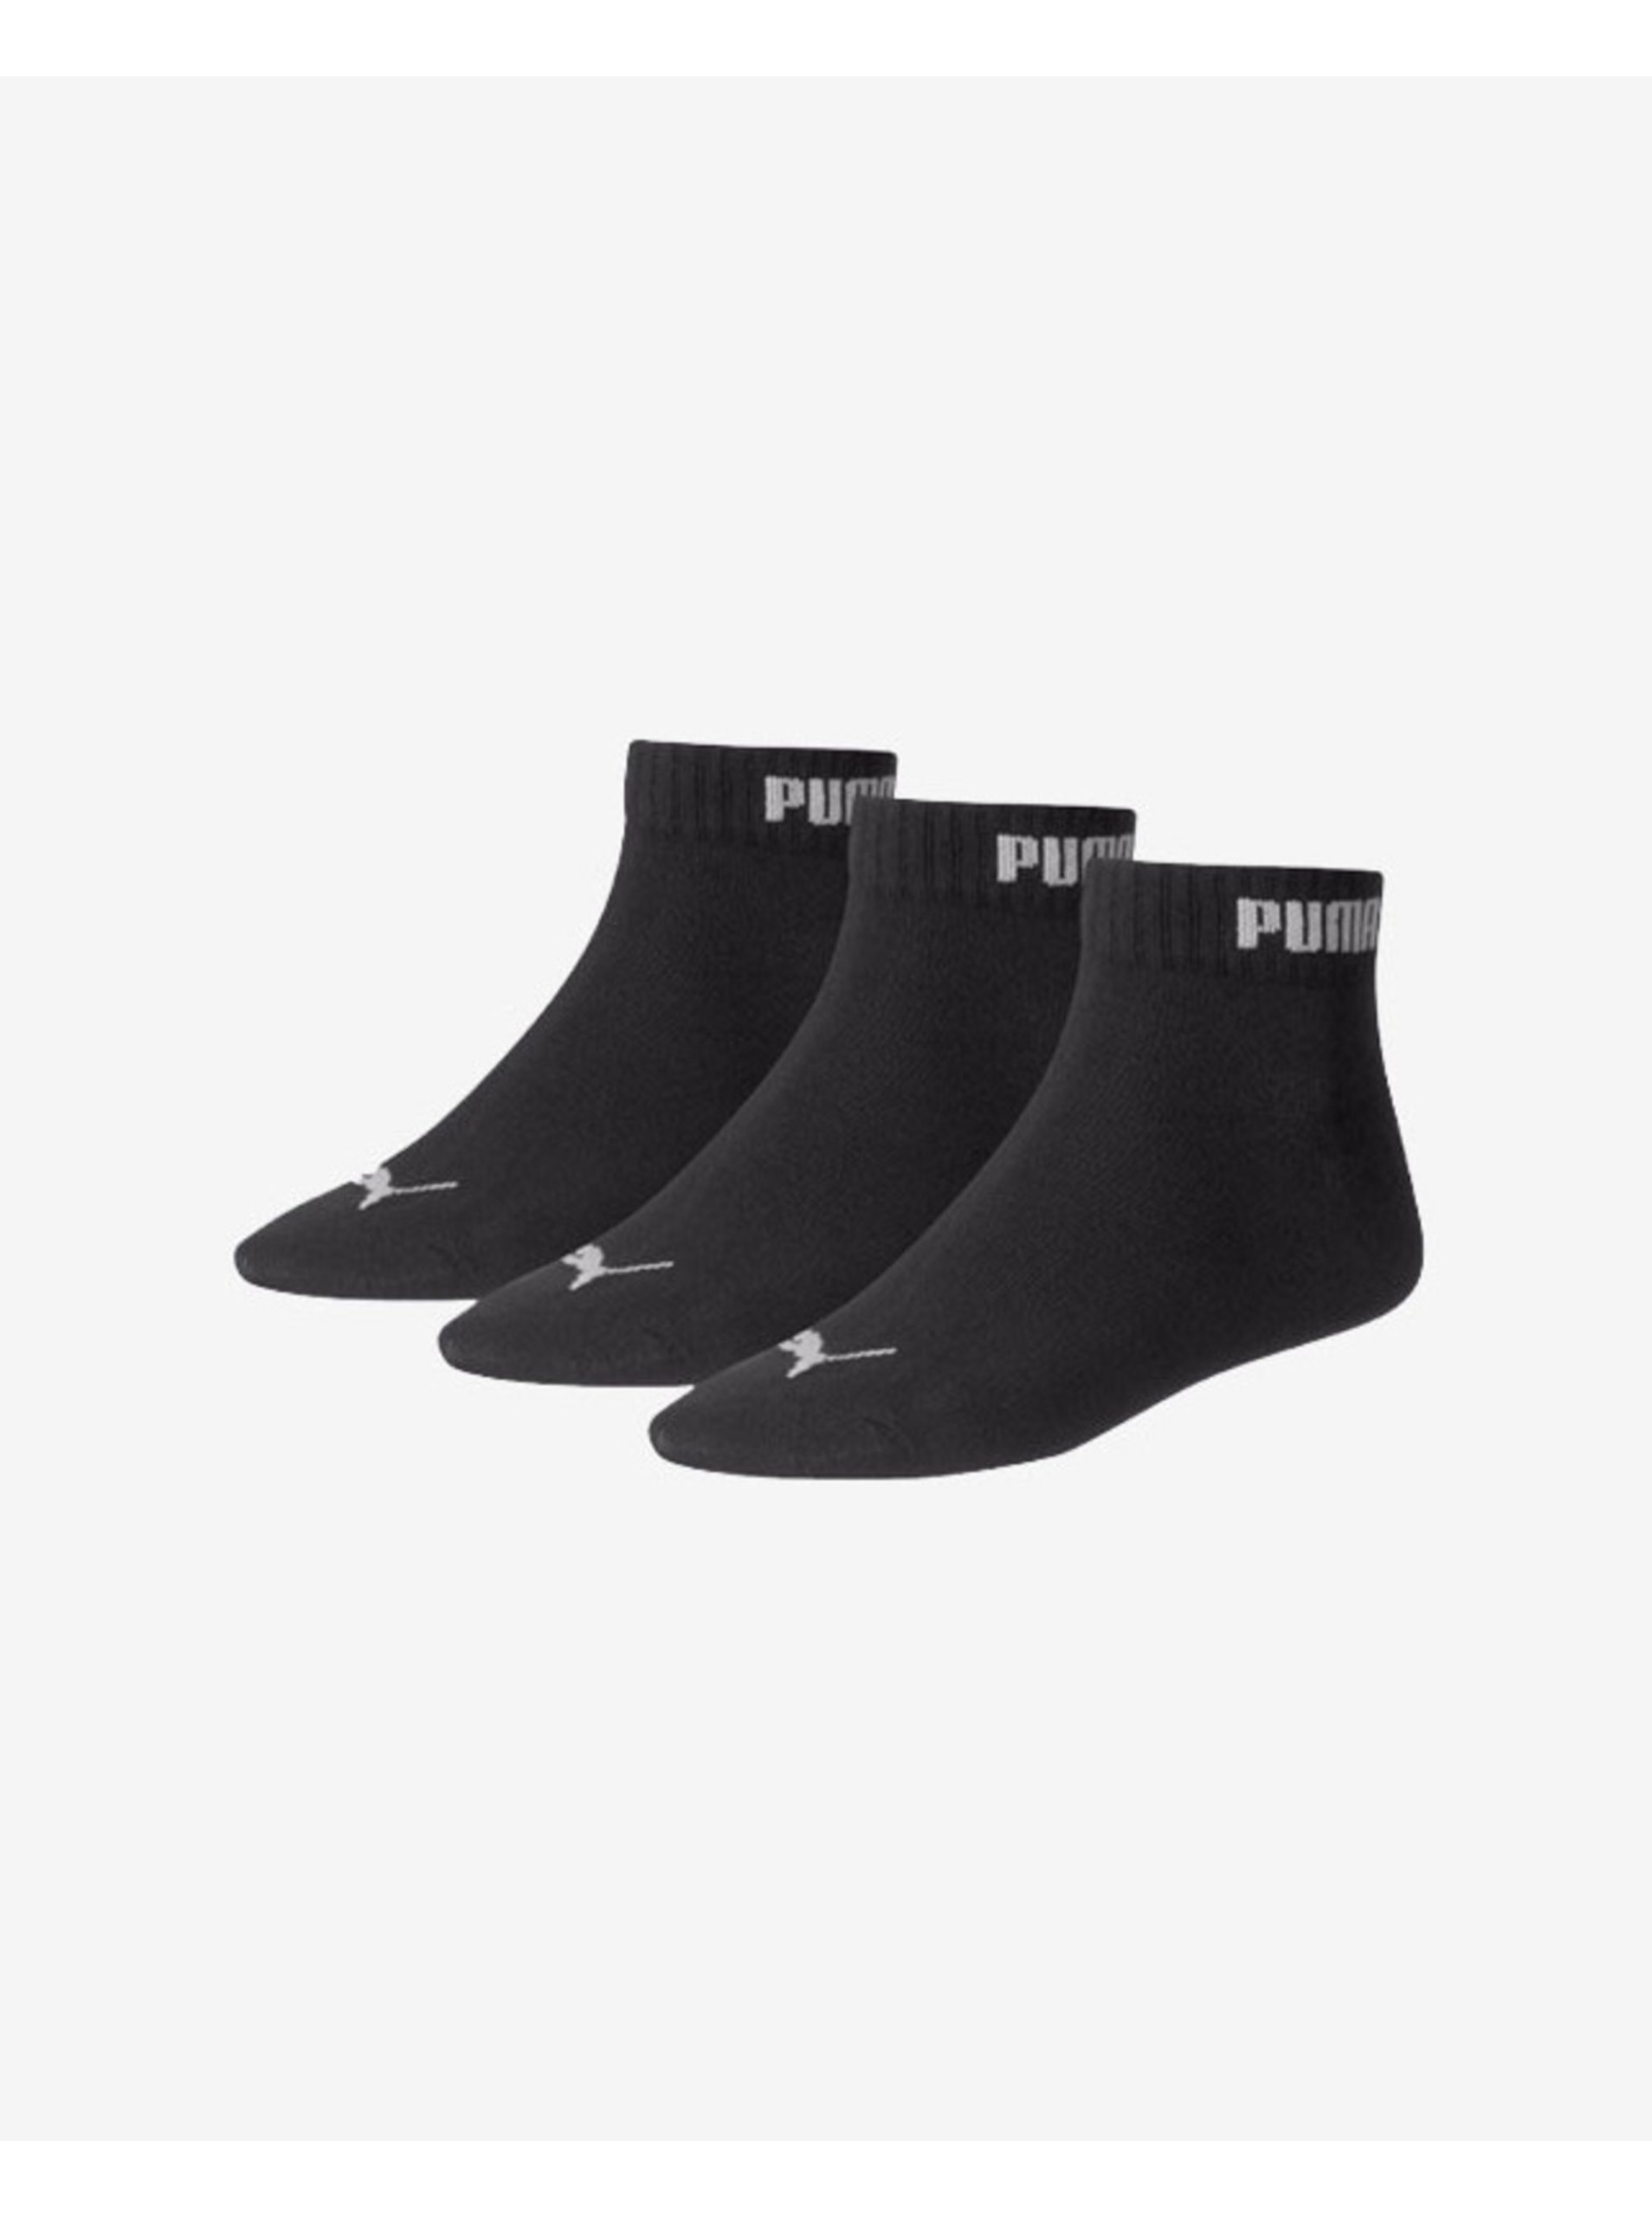 Lacno Súprava troch párov pánskych ponožiek v čiernej farbe Puma